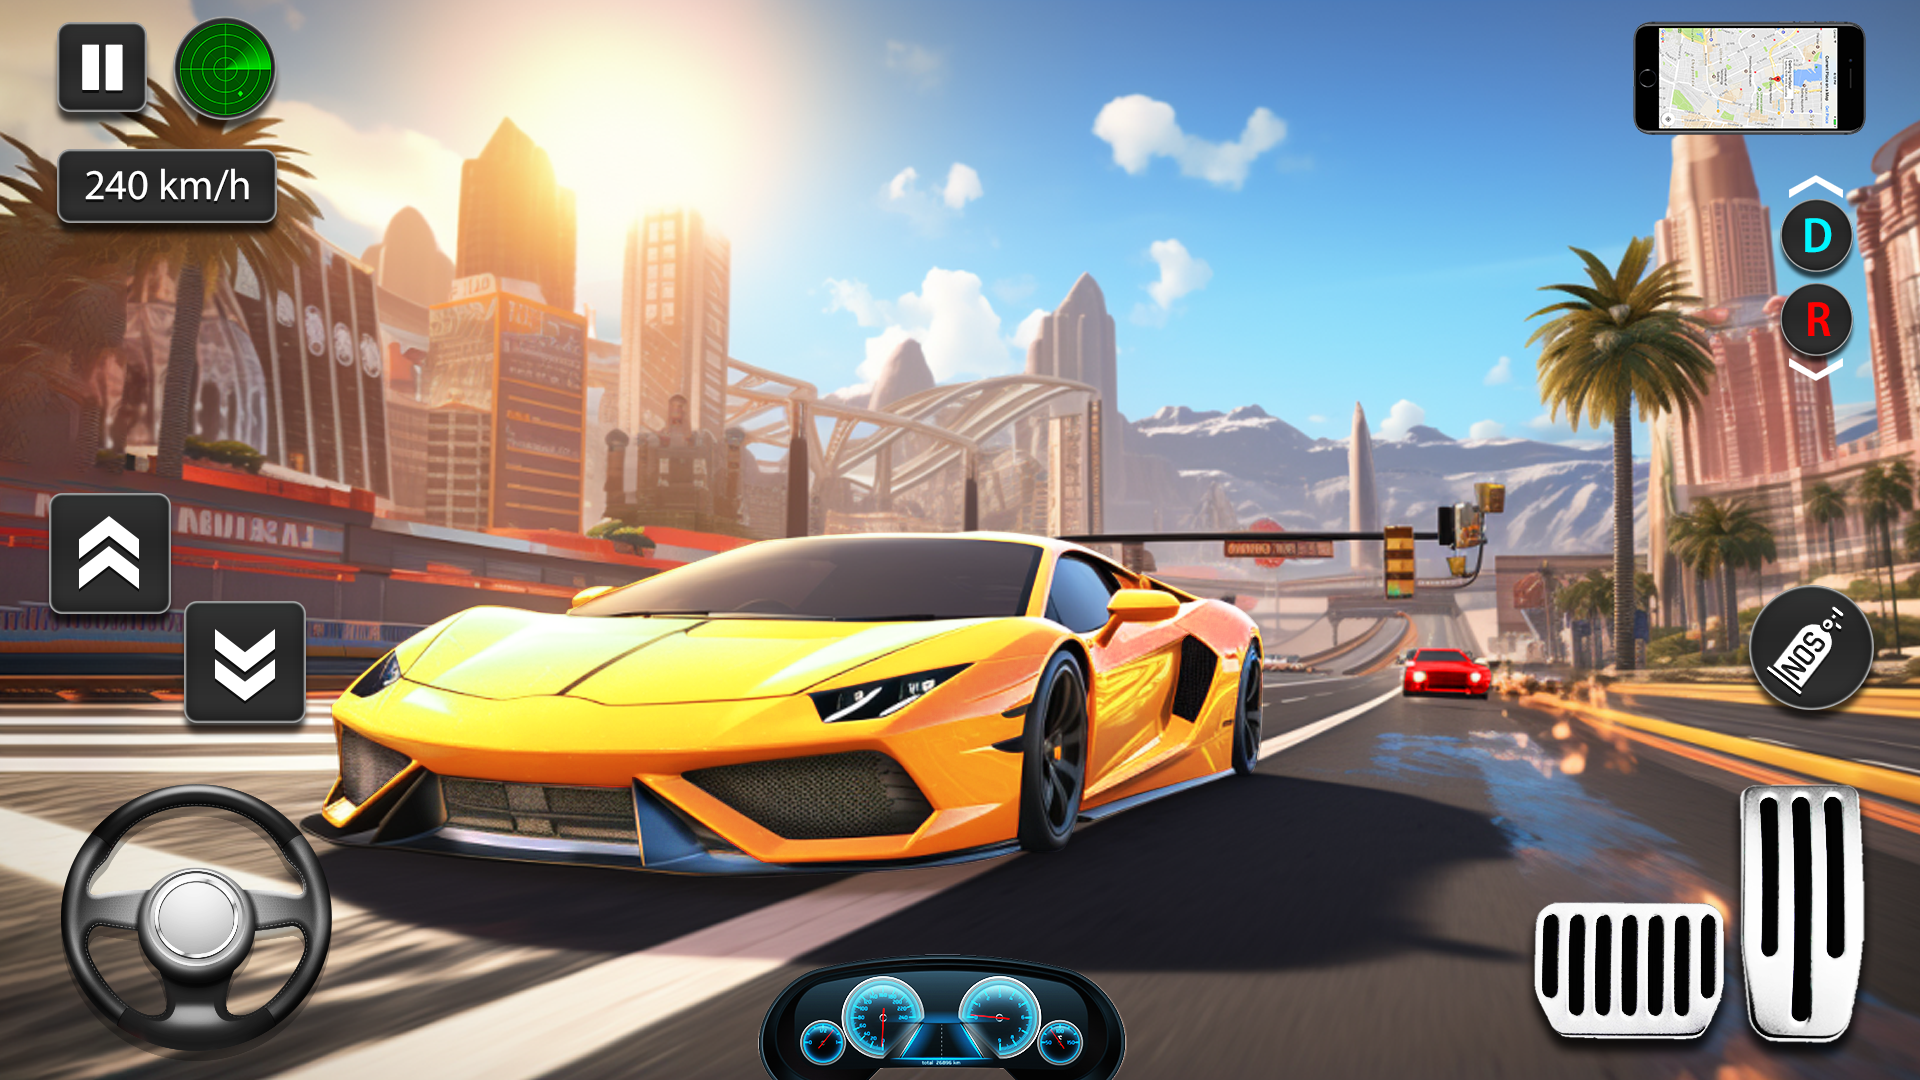 Jugando Juegos de Carros - Impossible Stunt Car Tracks 3D 